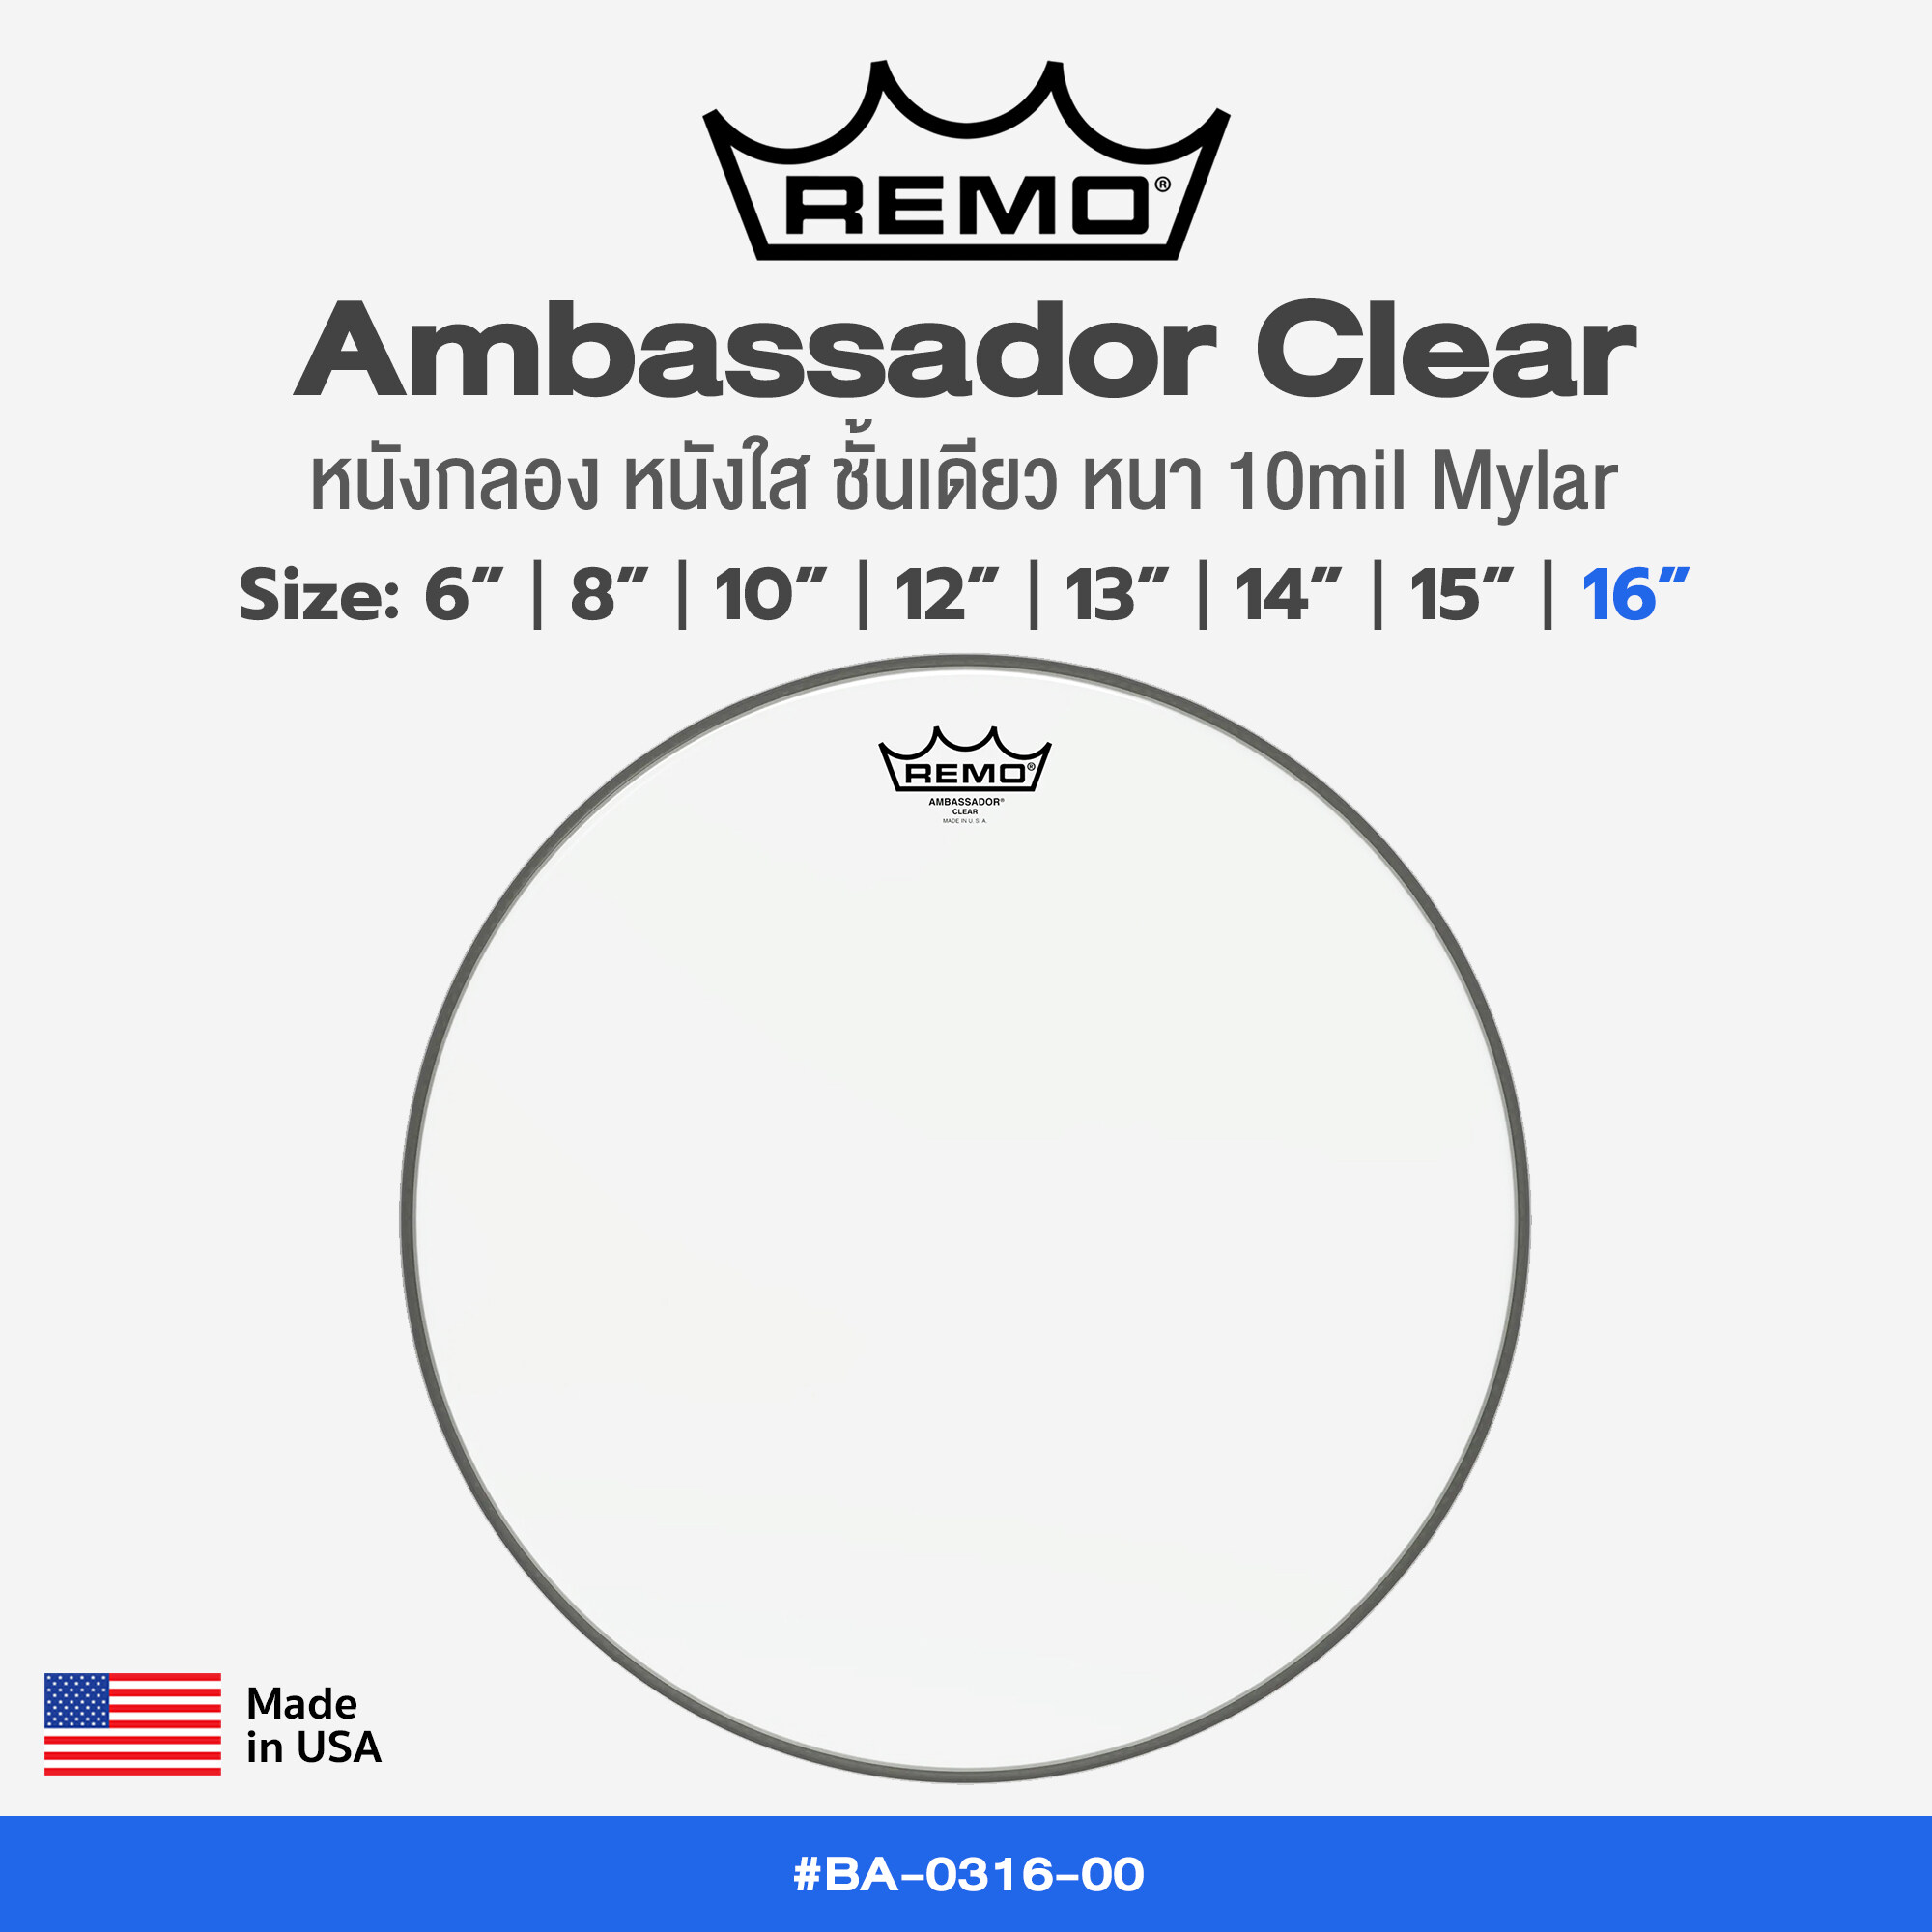 Remo Ambassador Clear